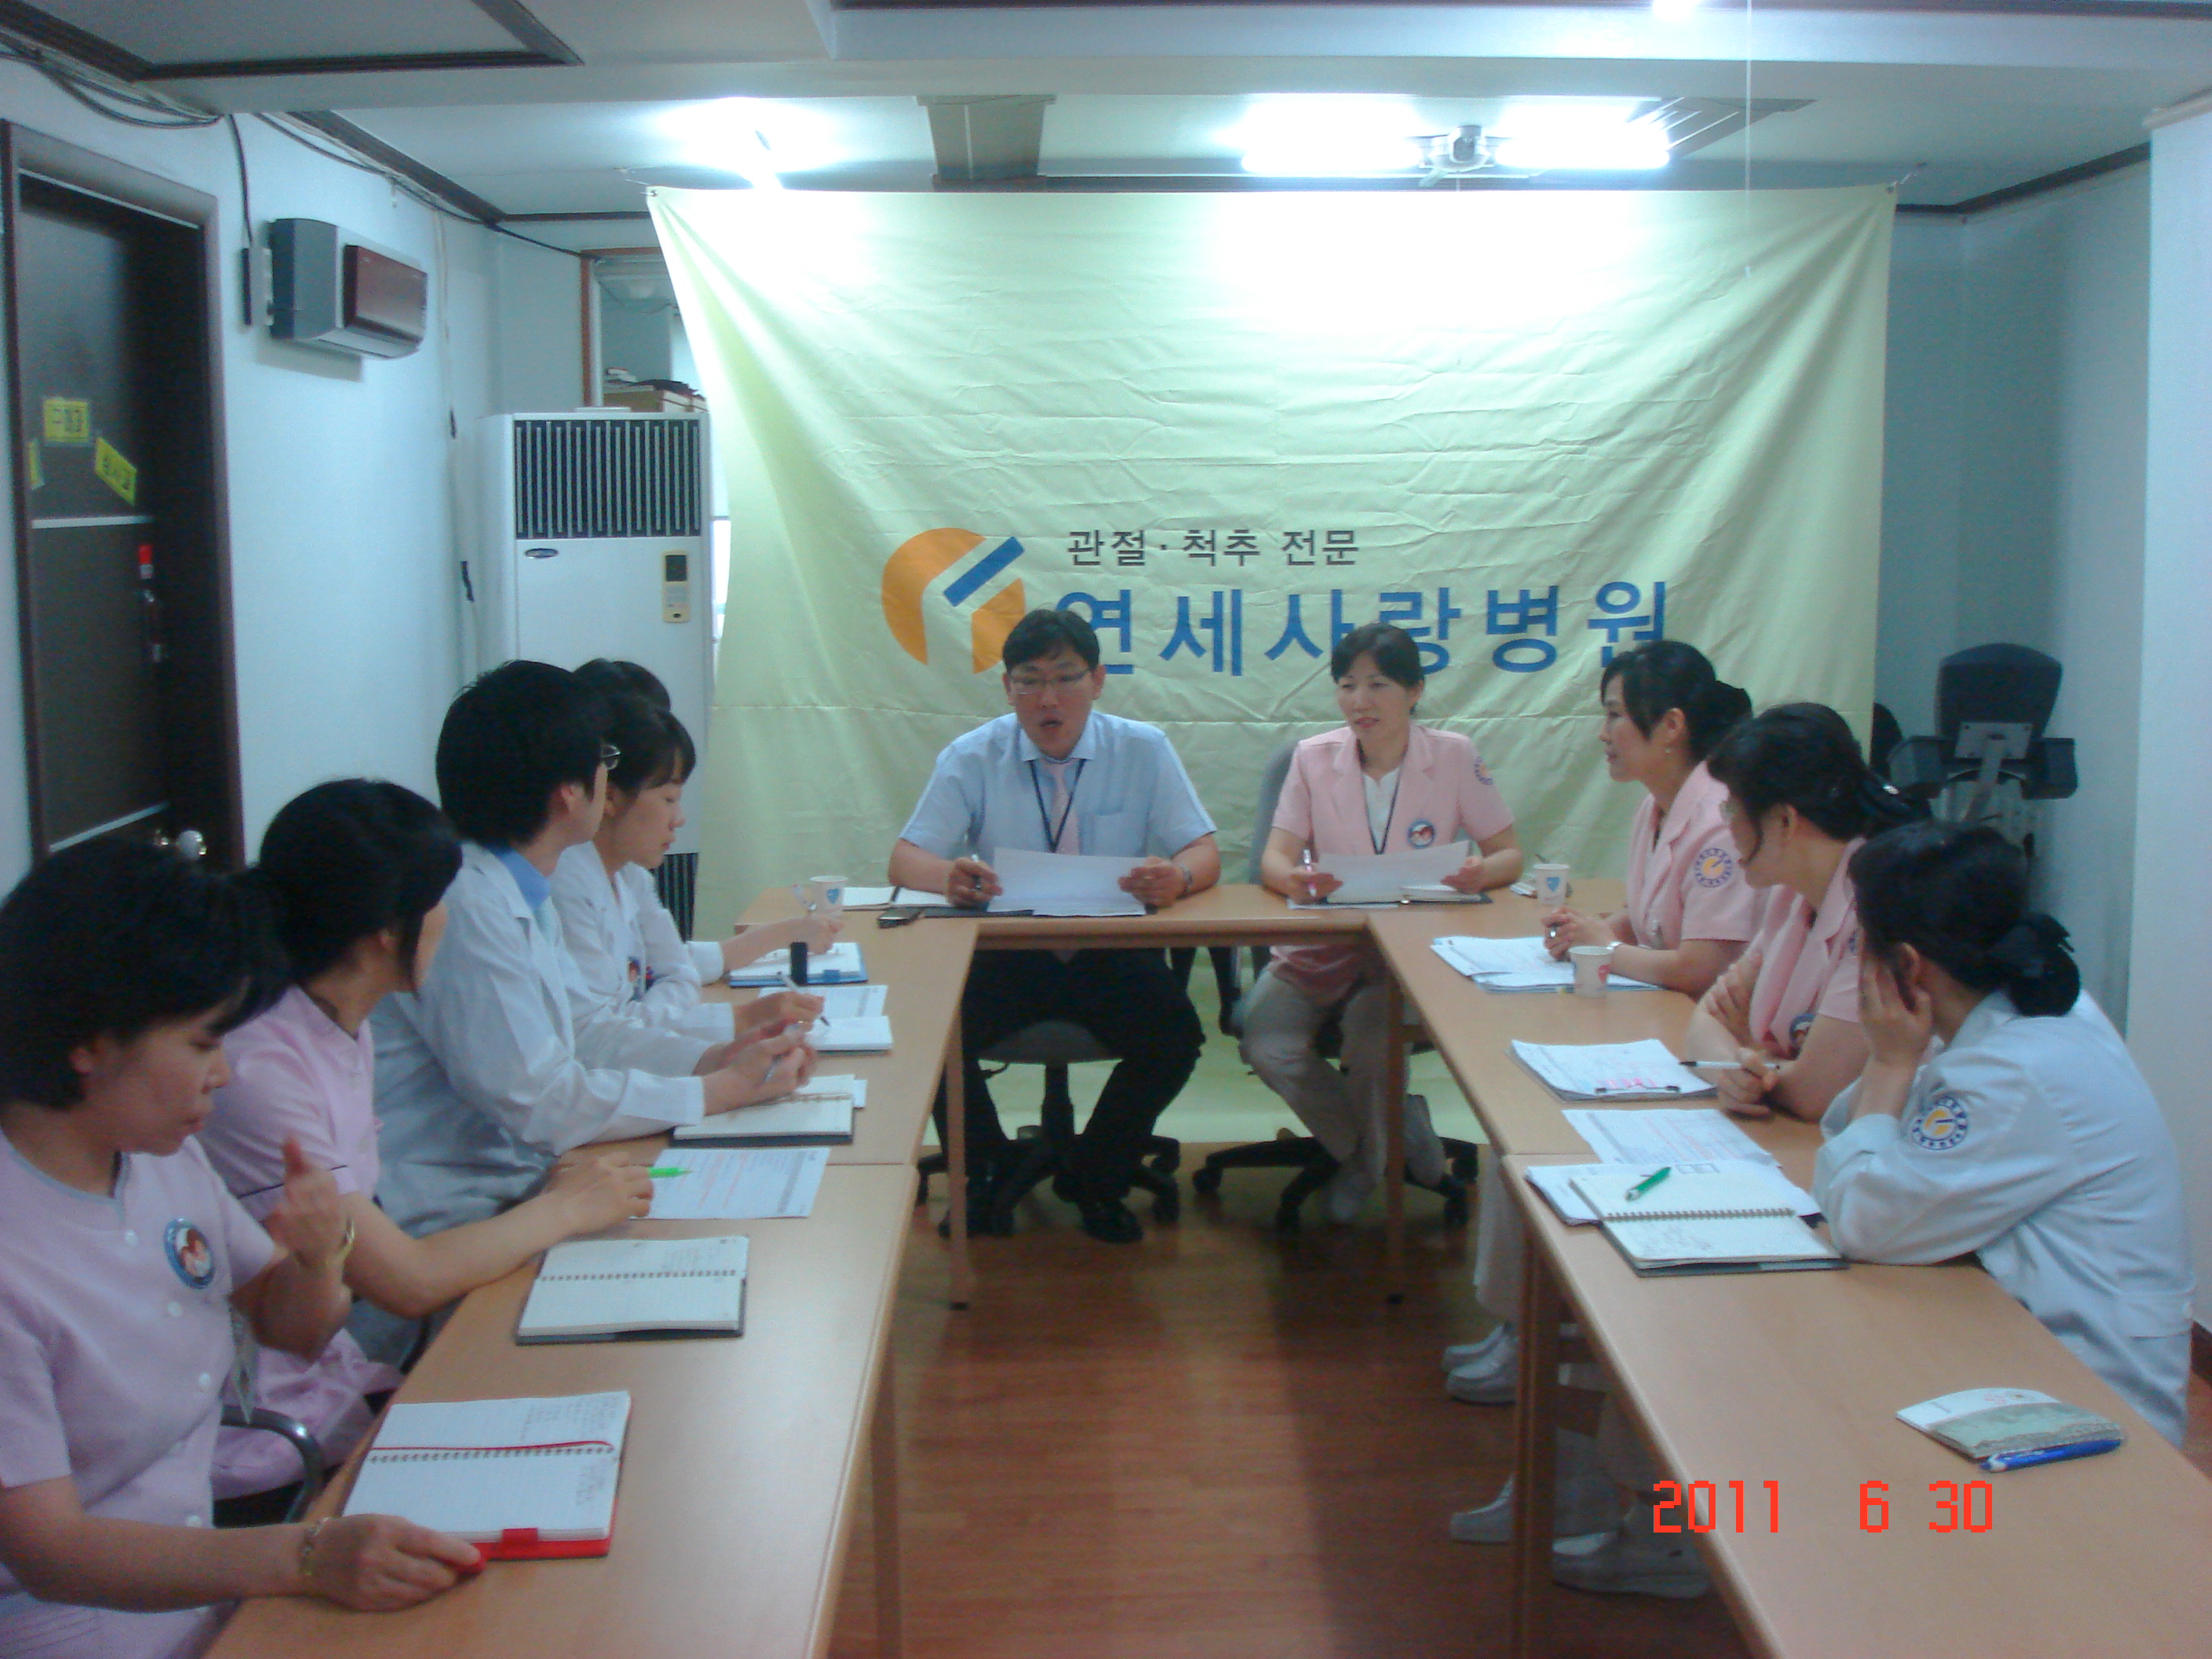 [강북점] 2011년 6월 30일 - 실무진 회의 개최 게시글의 5번째 첨부파일입니다.